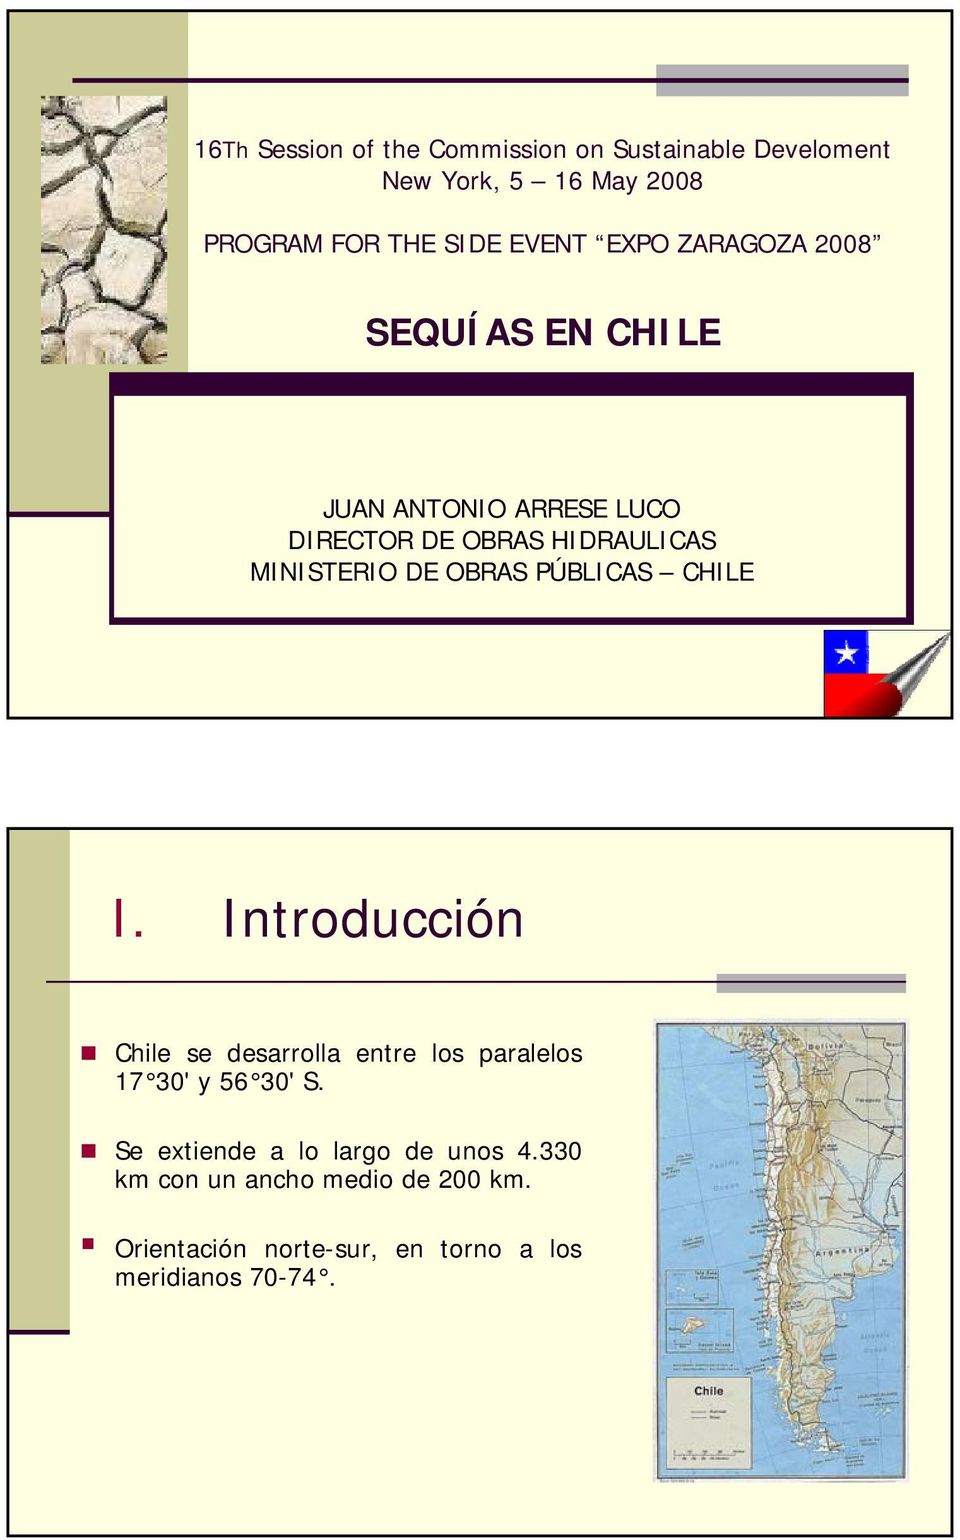 OBRAS PÚBLICAS CHILE I. Introducción Chile se desarrolla entre los paralelos 17 30' y 56 30' S.